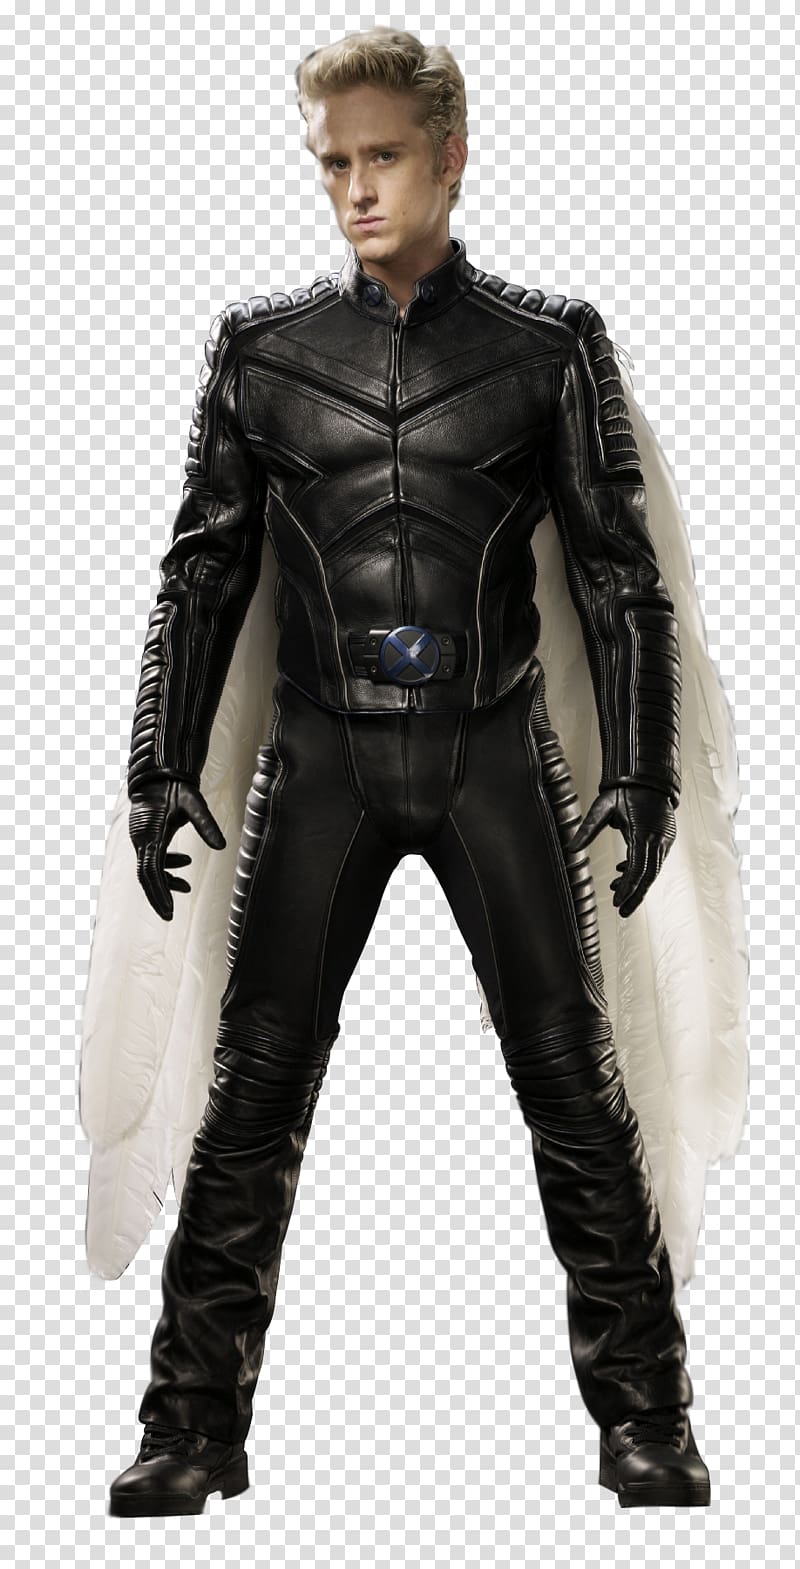 Ben Foster Warren Worthington III Wolverine Professor X Storm, xmen transparent background PNG clipart